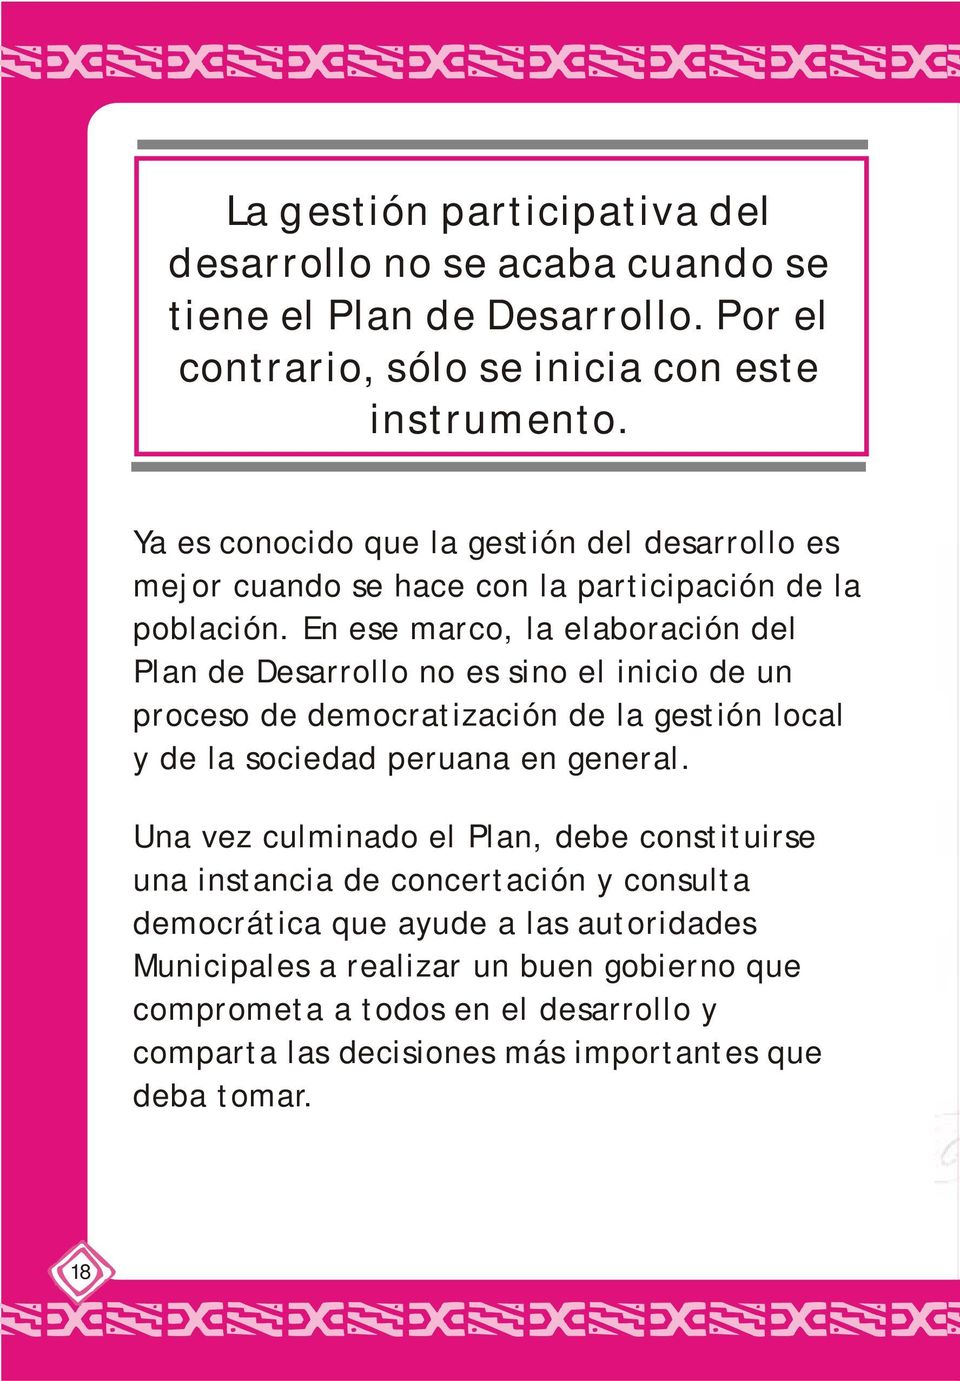 En ese marco, la elaboración del Plan de Desarrollo no es sino el inicio de un proceso de democratización de la gestión local y de la sociedad peruana en general.